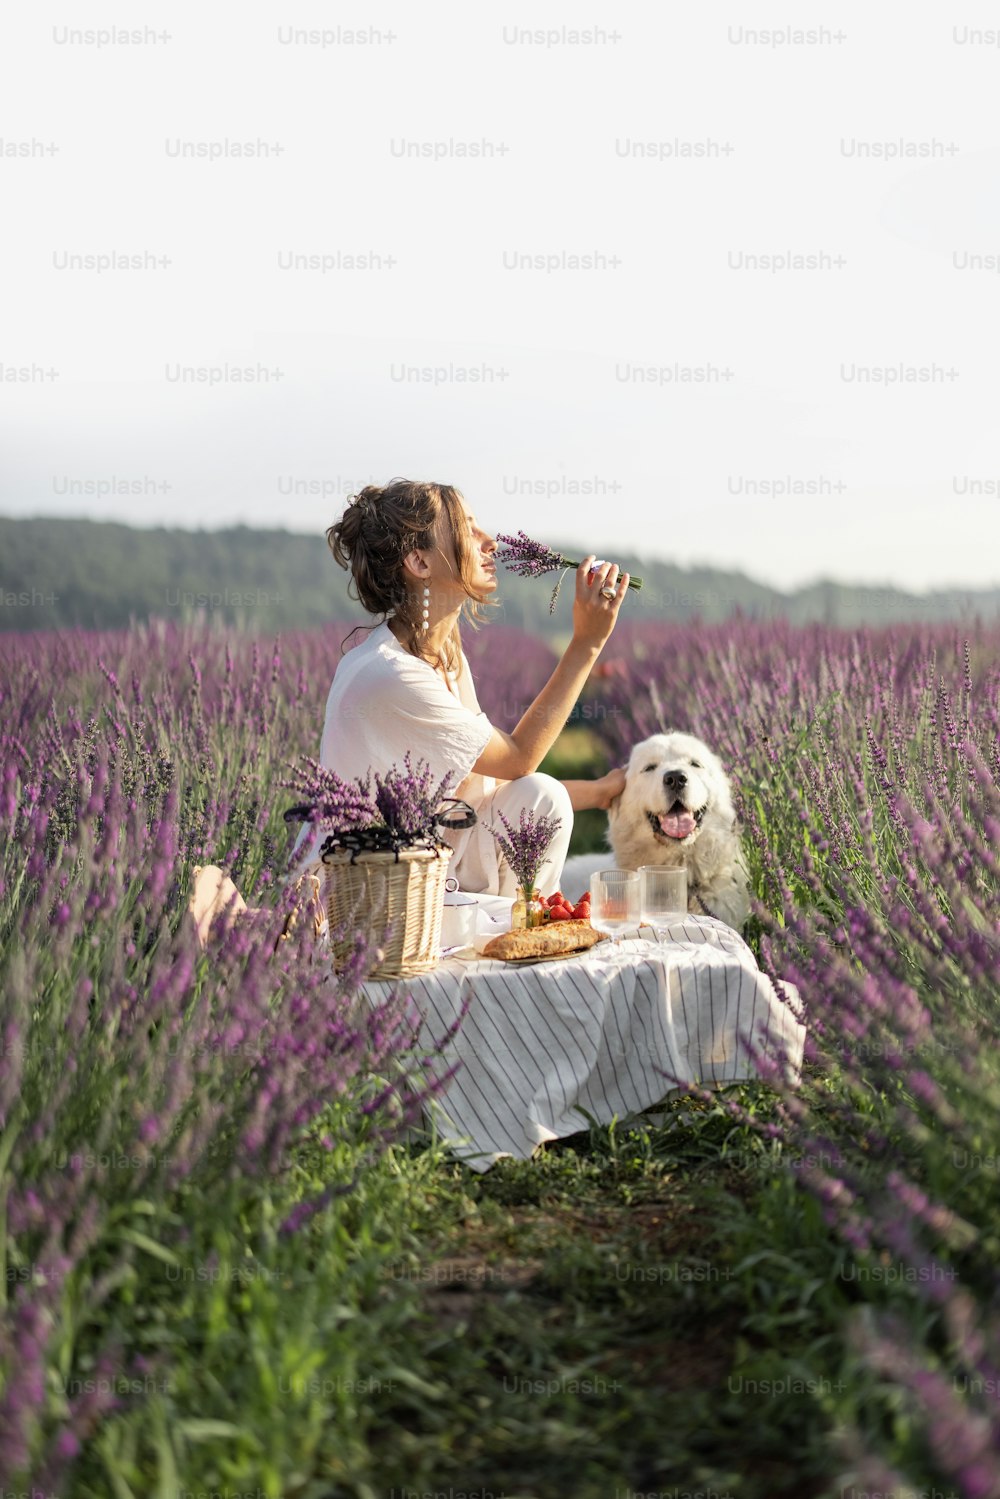 보라색 꽃다발이 있는 라벤더 밭에서 개와 함께 피크닉을 즐기는 젊은 여성. 아름답고 차분한 자연 개념